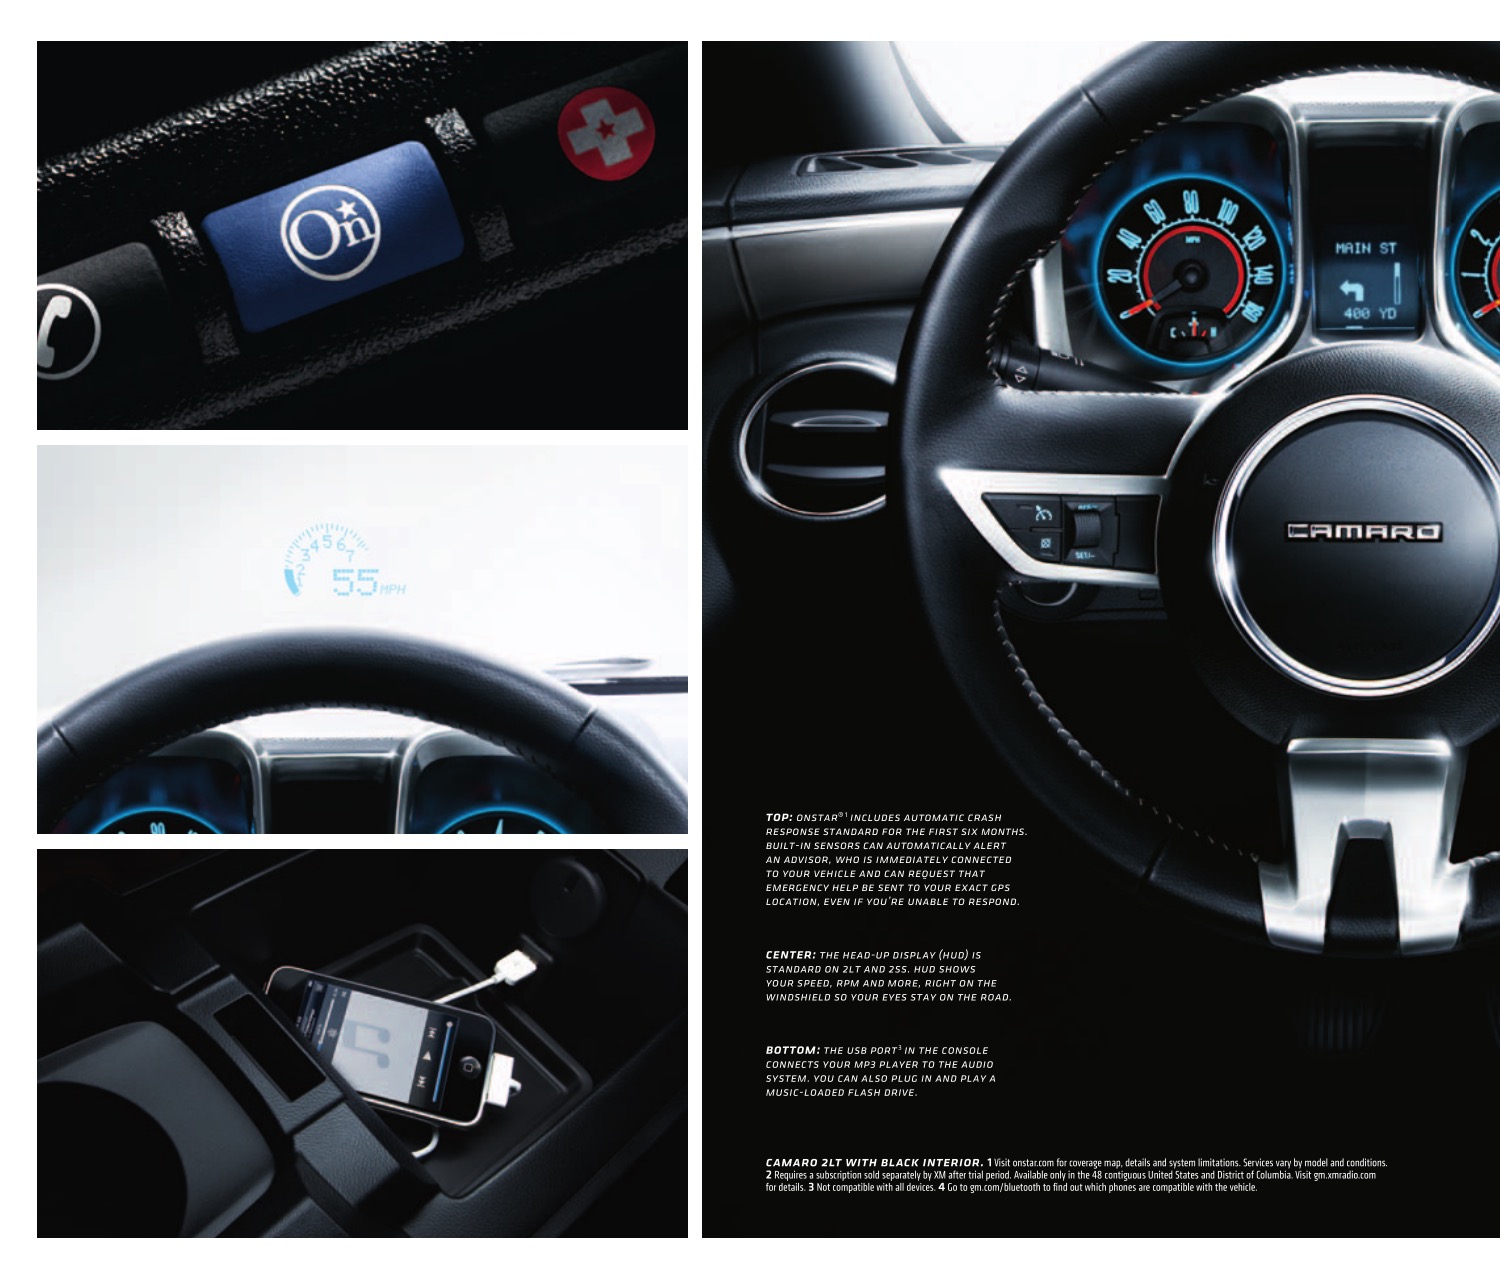 2011 Chev Camaro Brochure Page 2